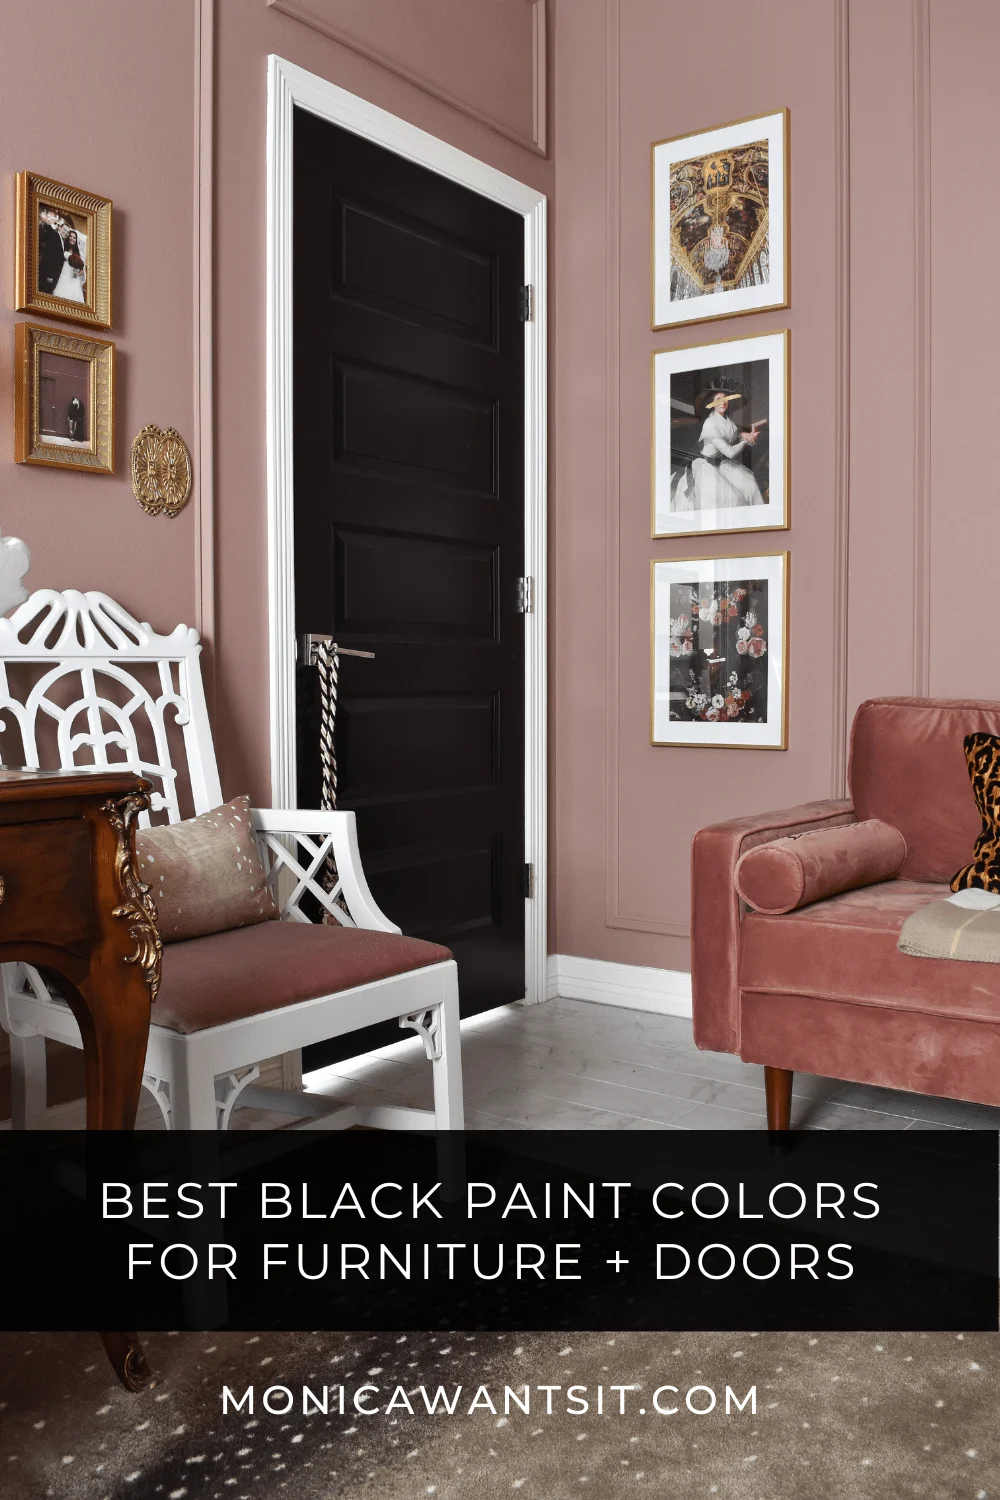 Best Black Paint for Your Front Door